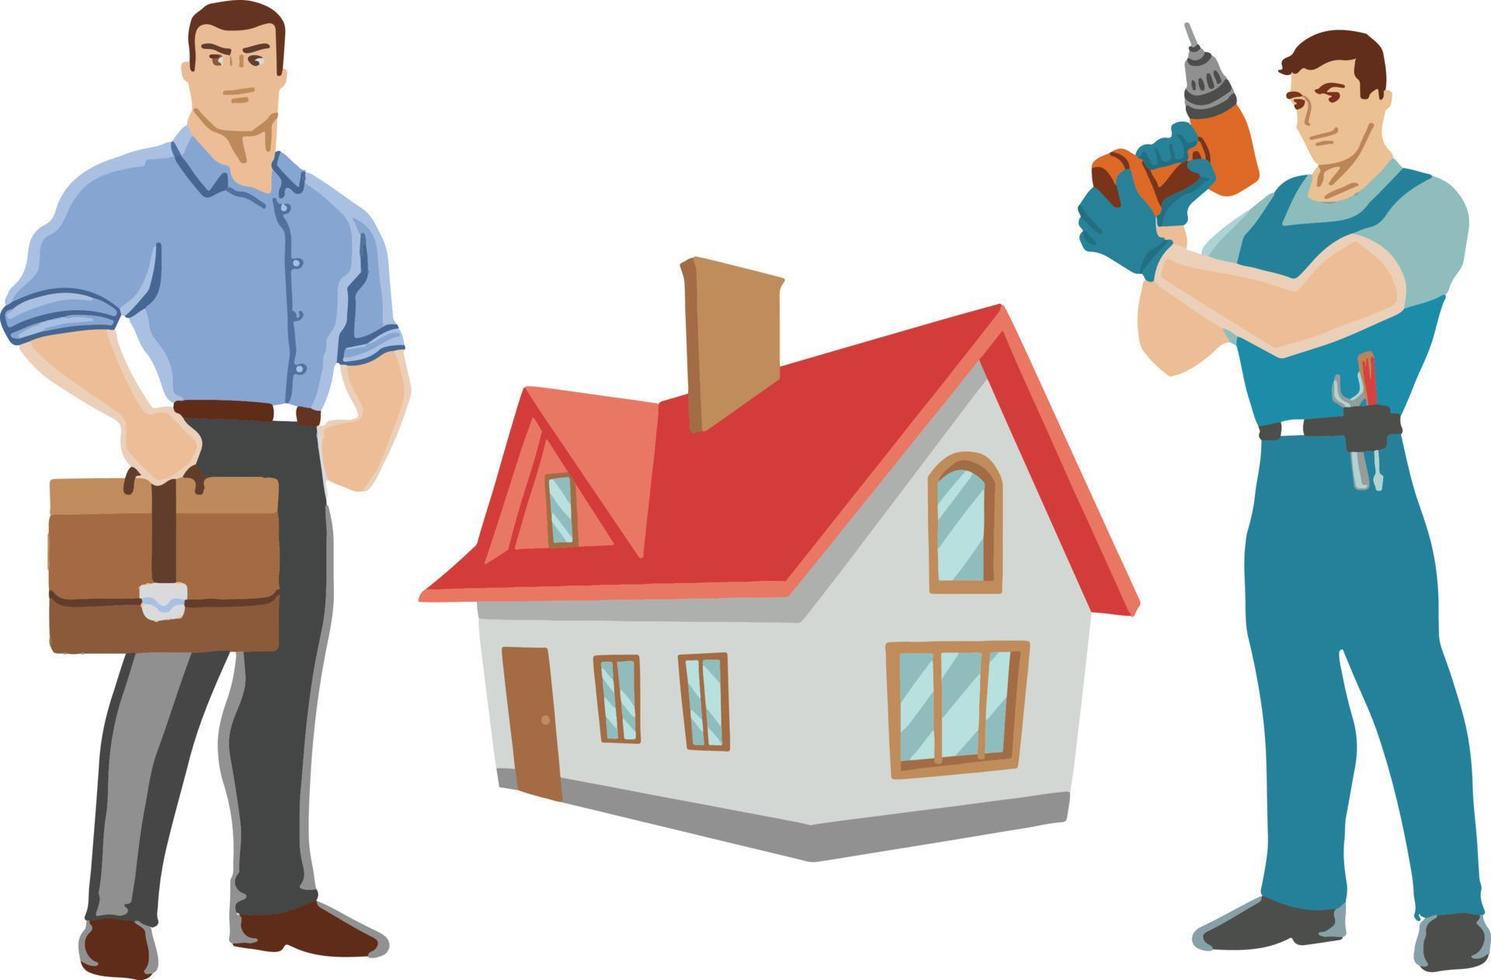 acheter une maison avec rénovation clé en main, contremaître et agent immobilier vecteur